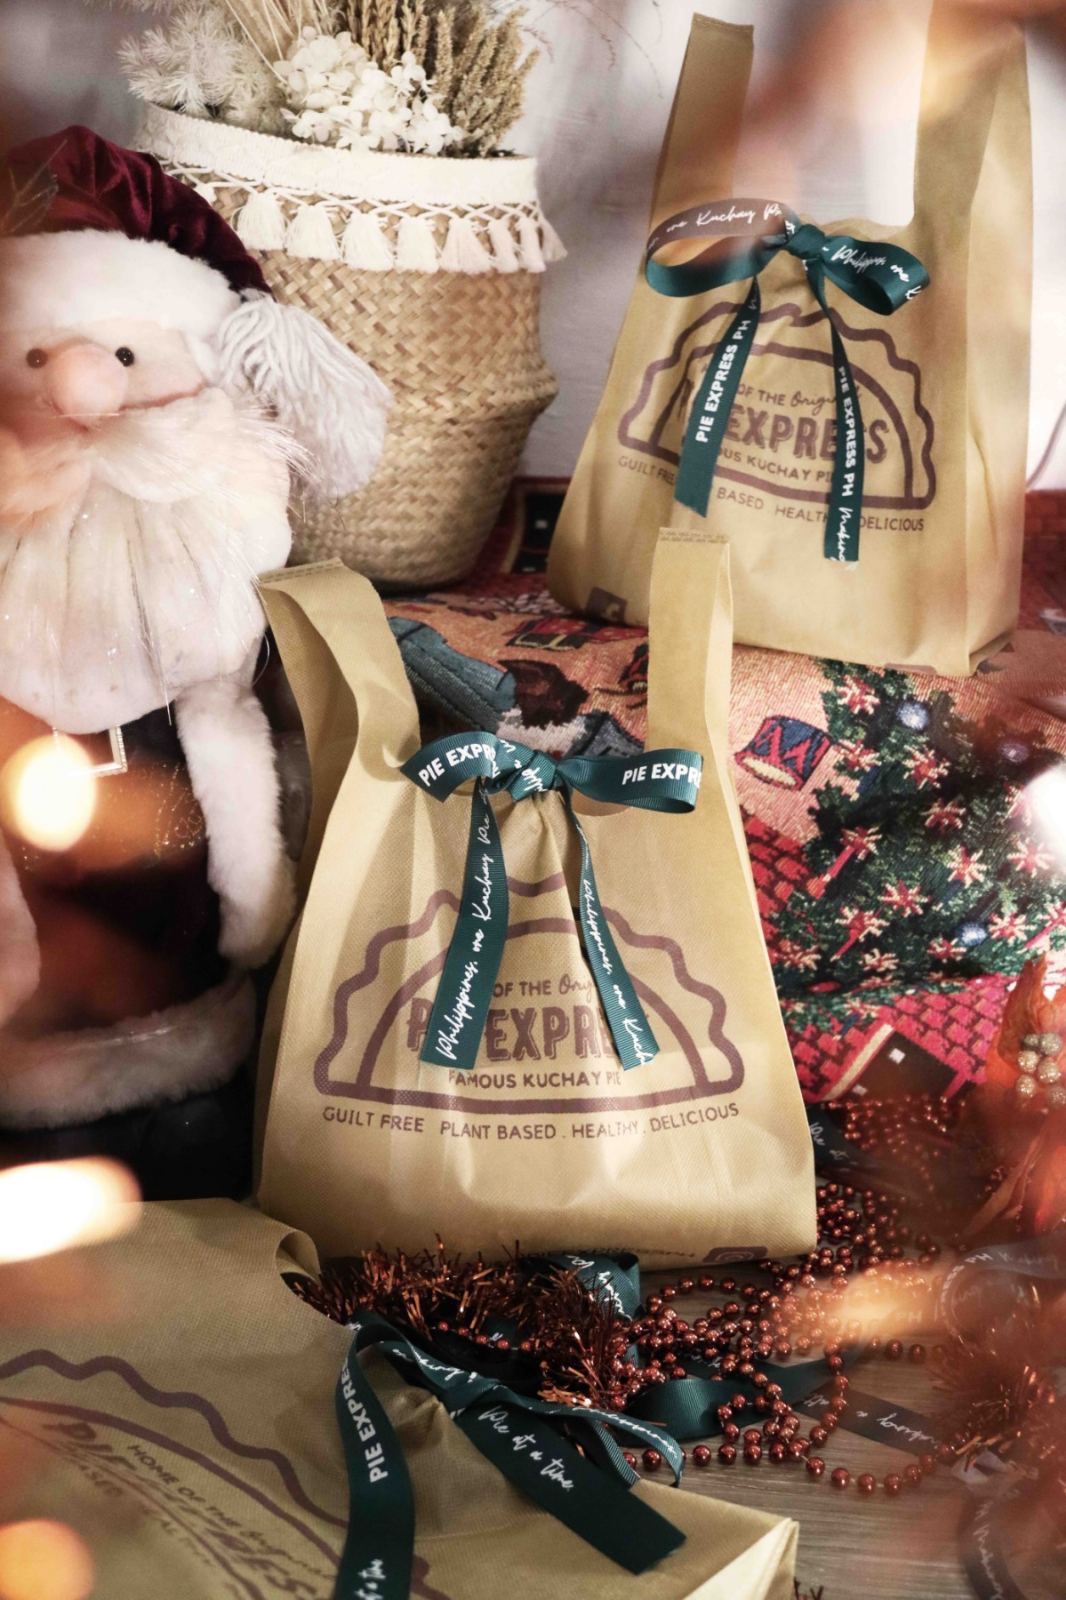 Pie Express Gift Bag